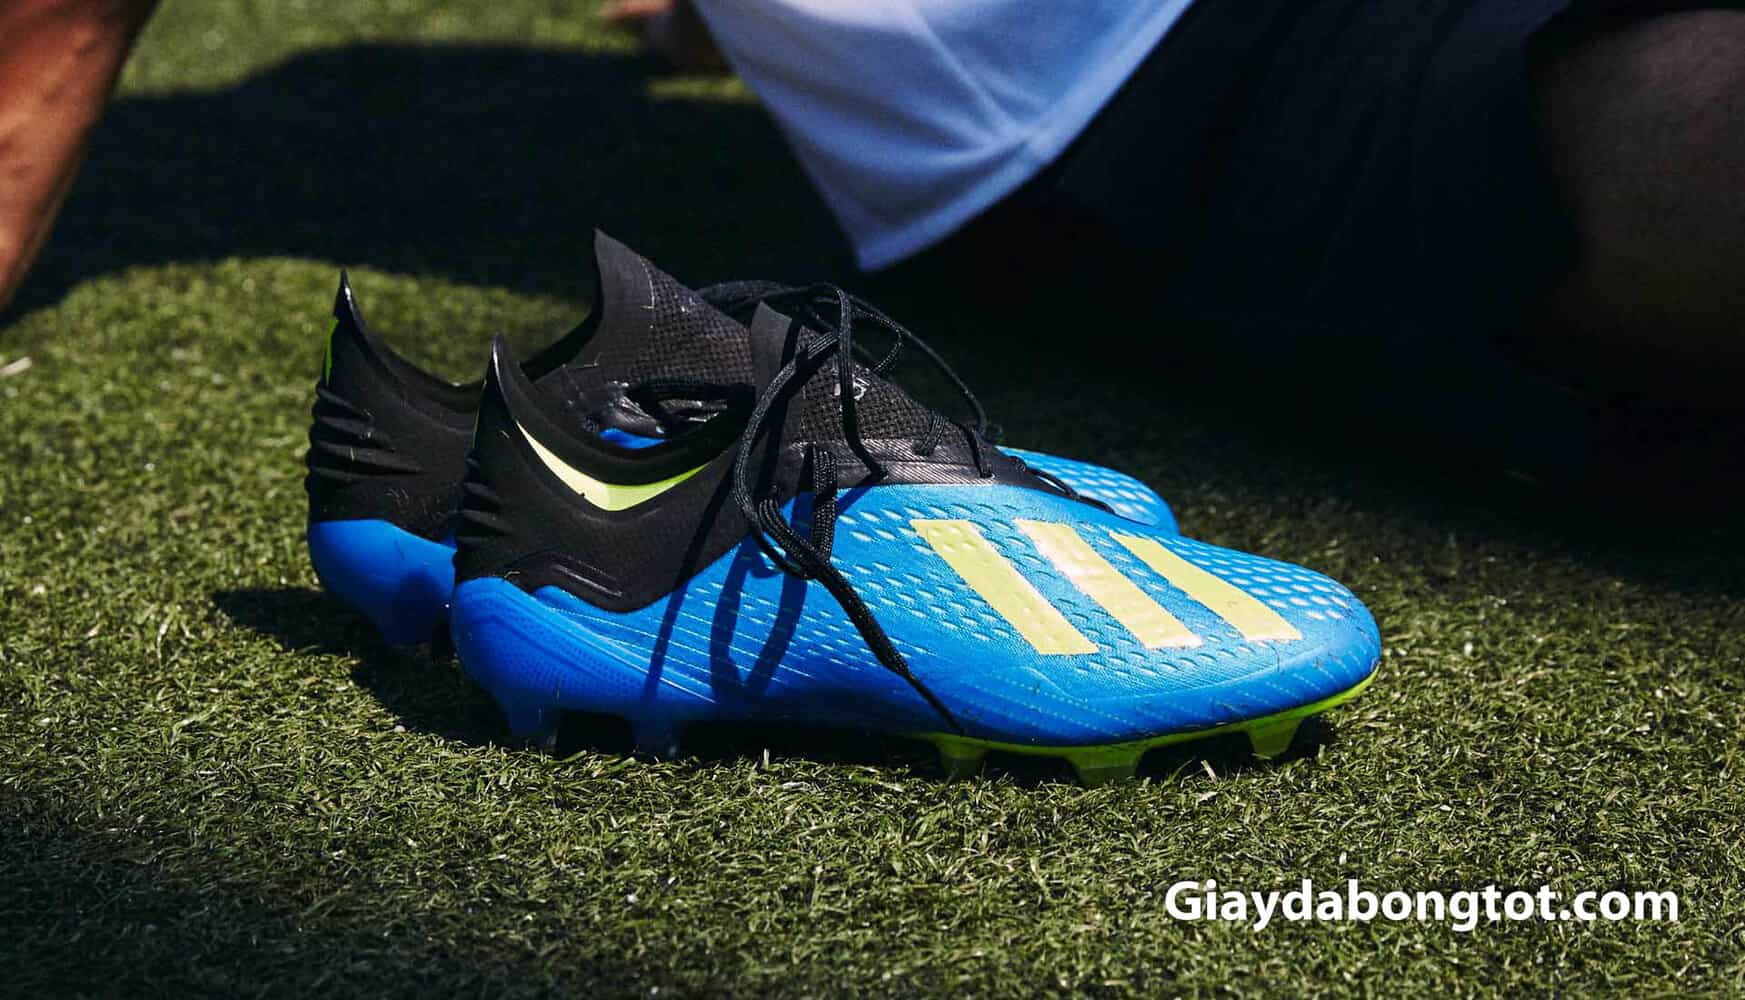 Giày bóng đá Adidas X18.1 được ra mắt tại Worldcup 2018 với nhiều sự khác biệt